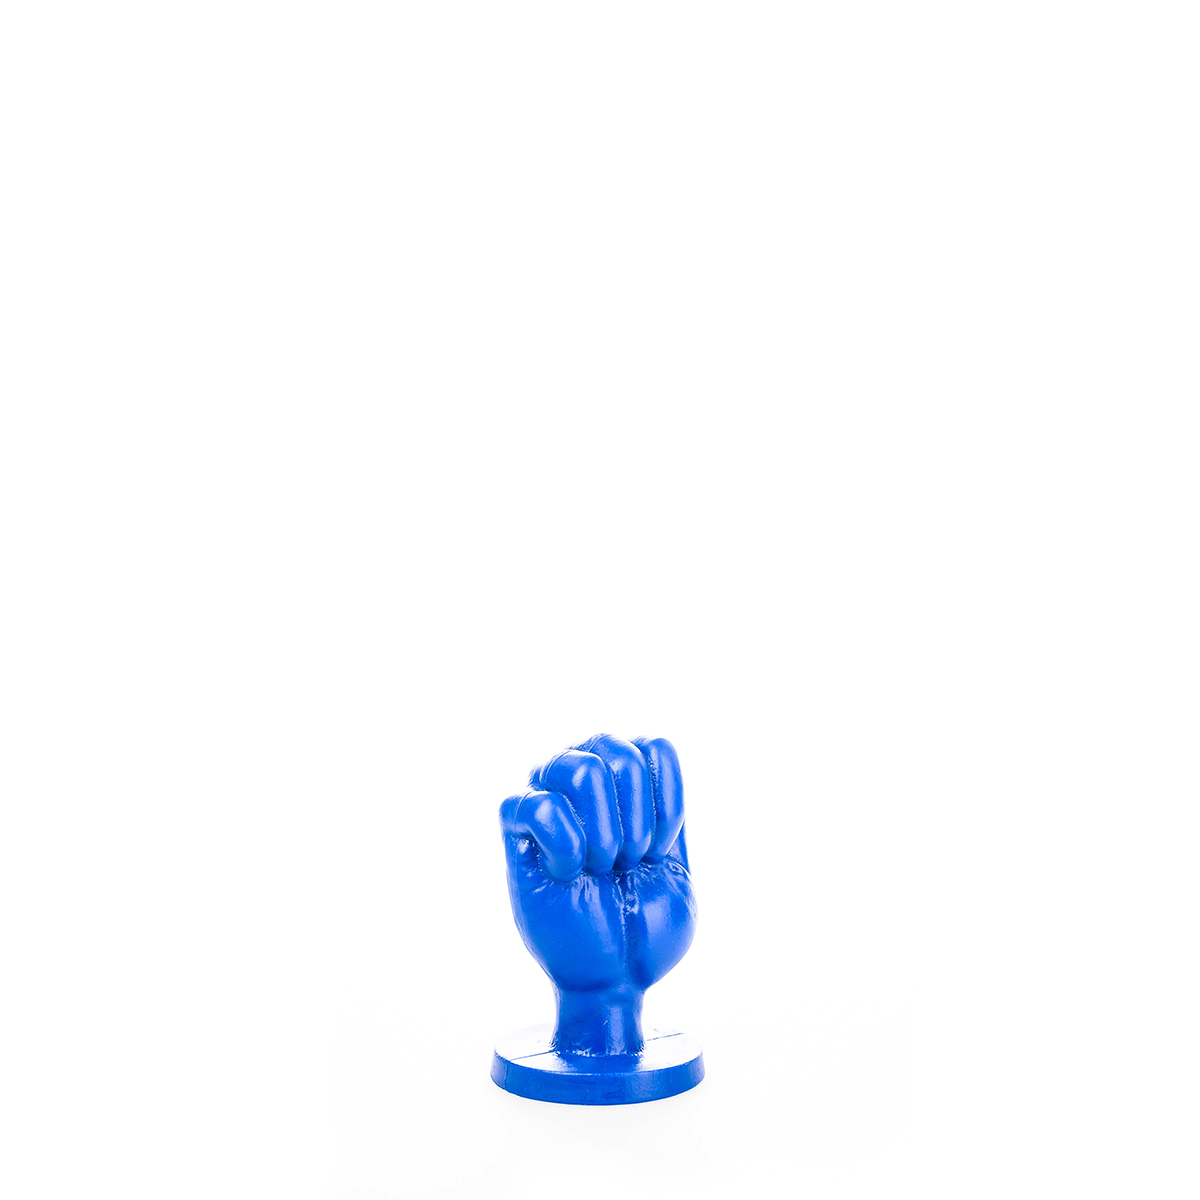 All-Blue-Fist-Small-ABB92-115-ABB92-5